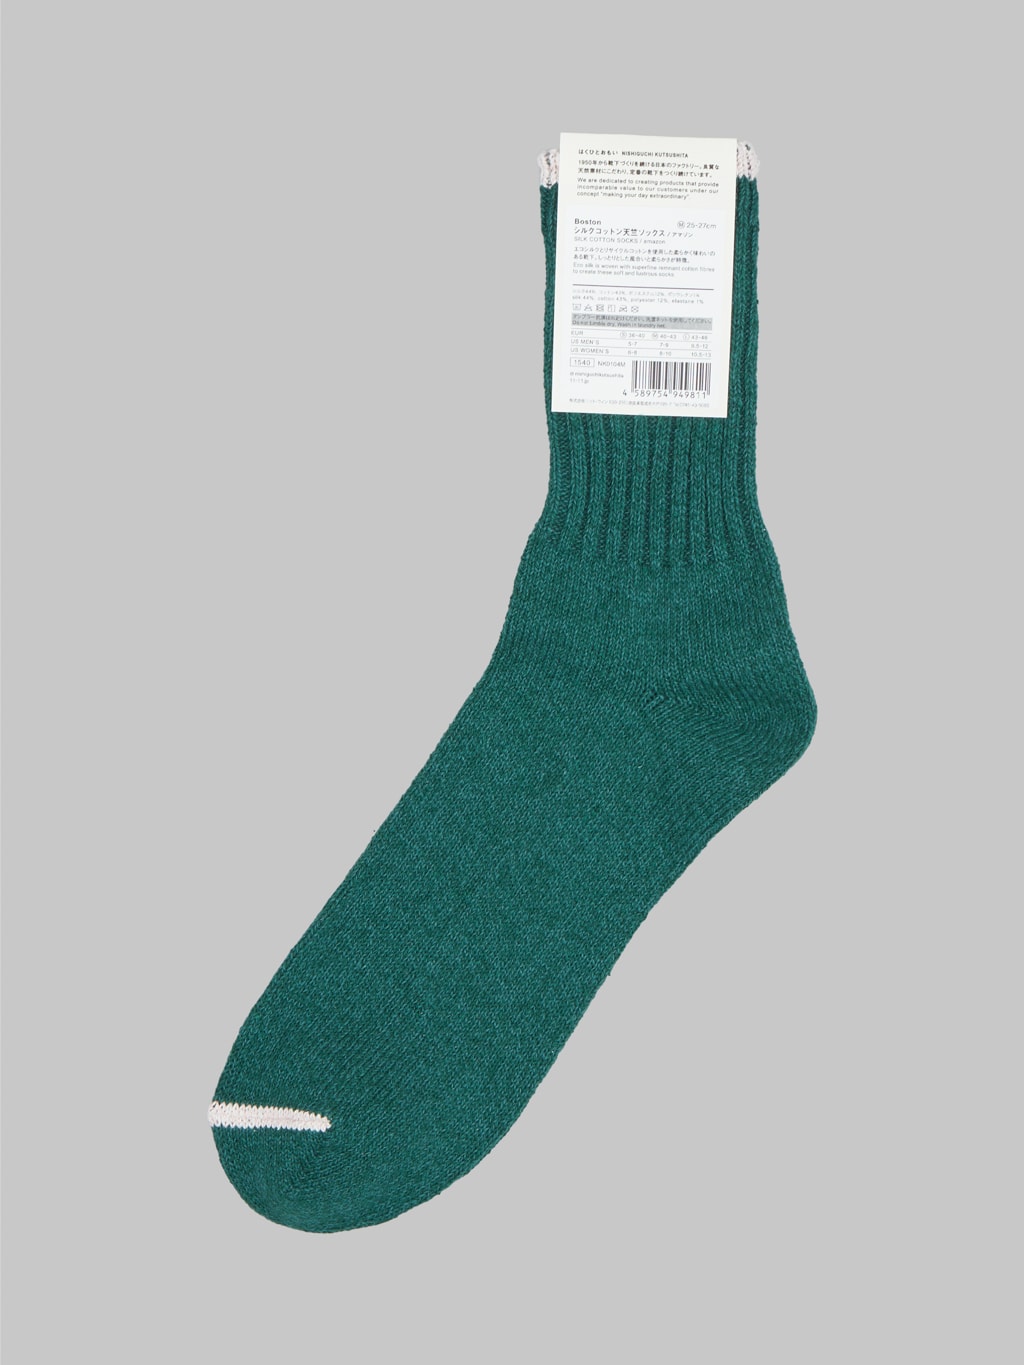 nishiguchi kutsushita silk cotton socks amazon green label